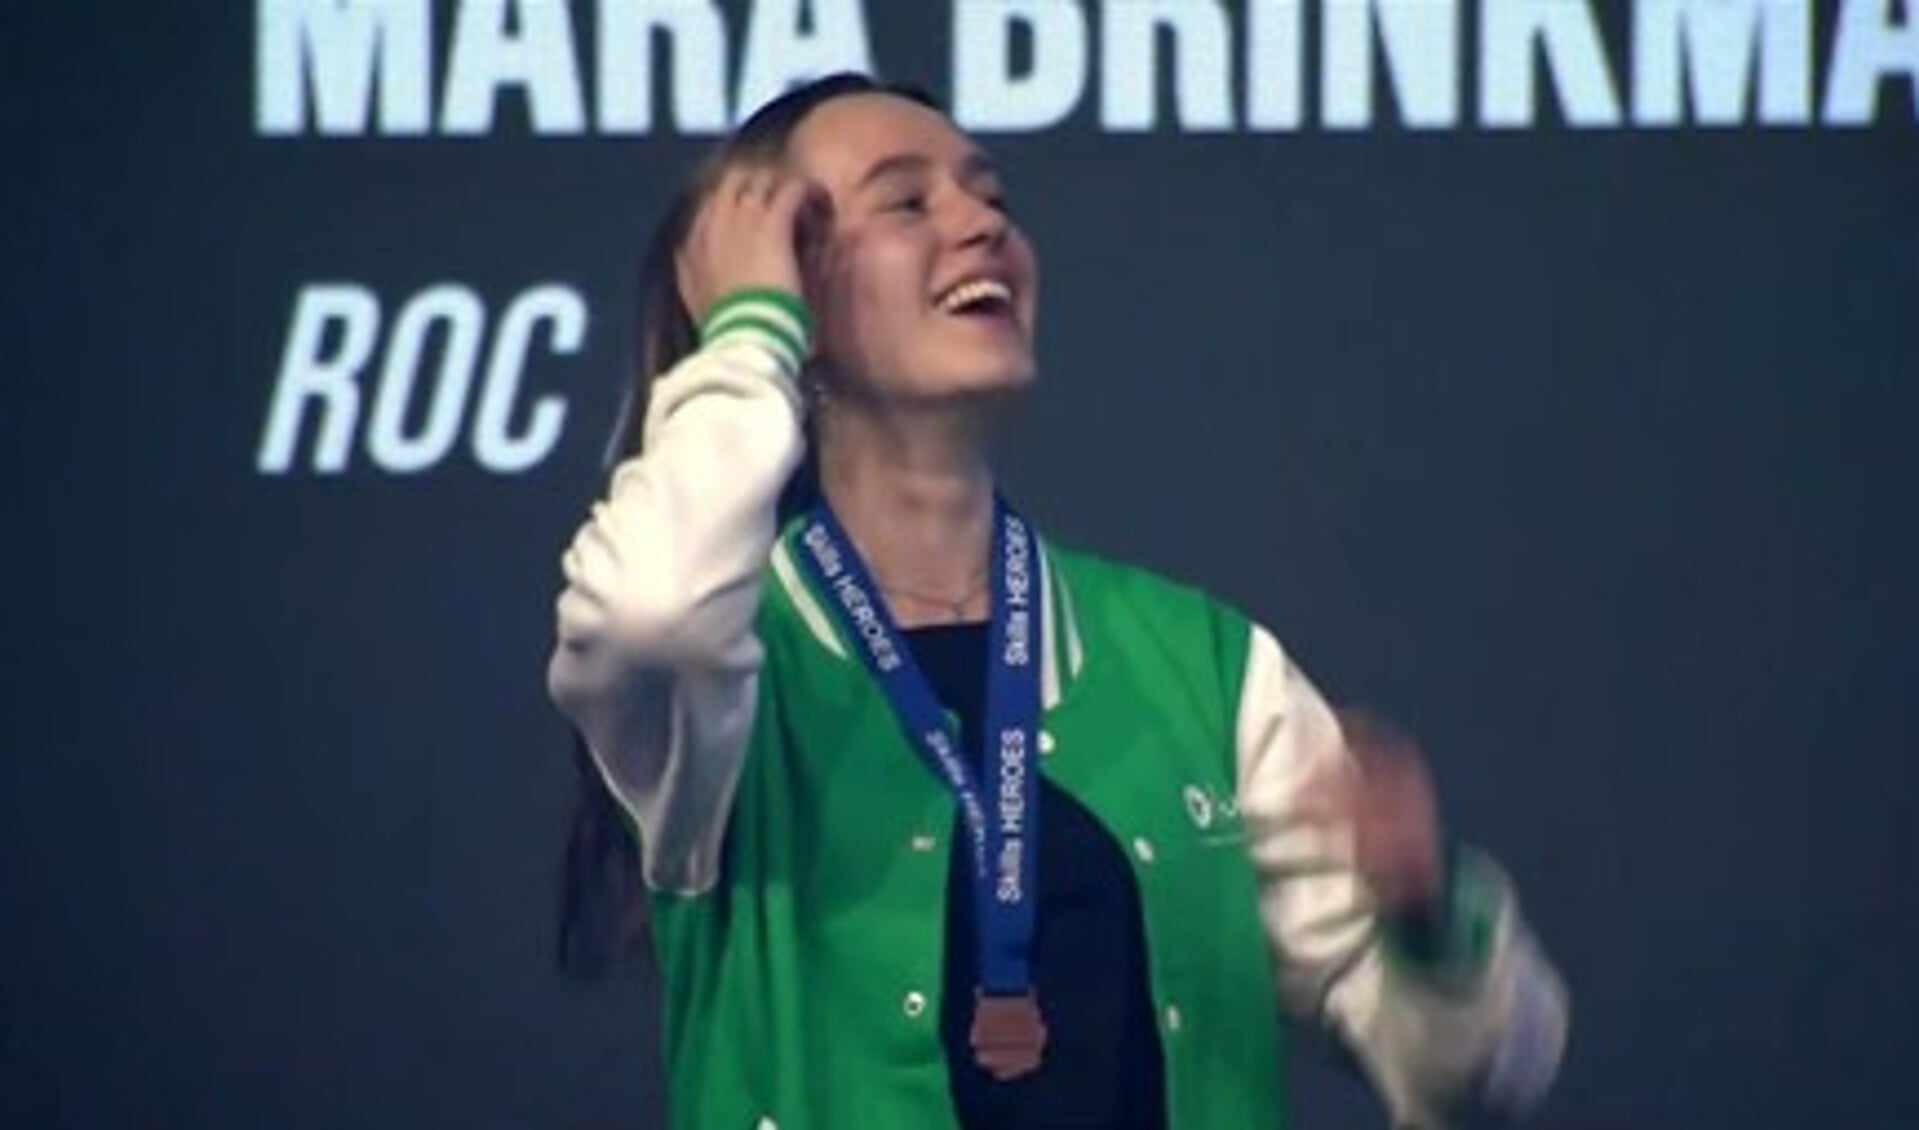 Tijdens de prijsuitreiking mocht Mara Brinkman de bronzen medaille in ontvangst nemen. Foto: PR